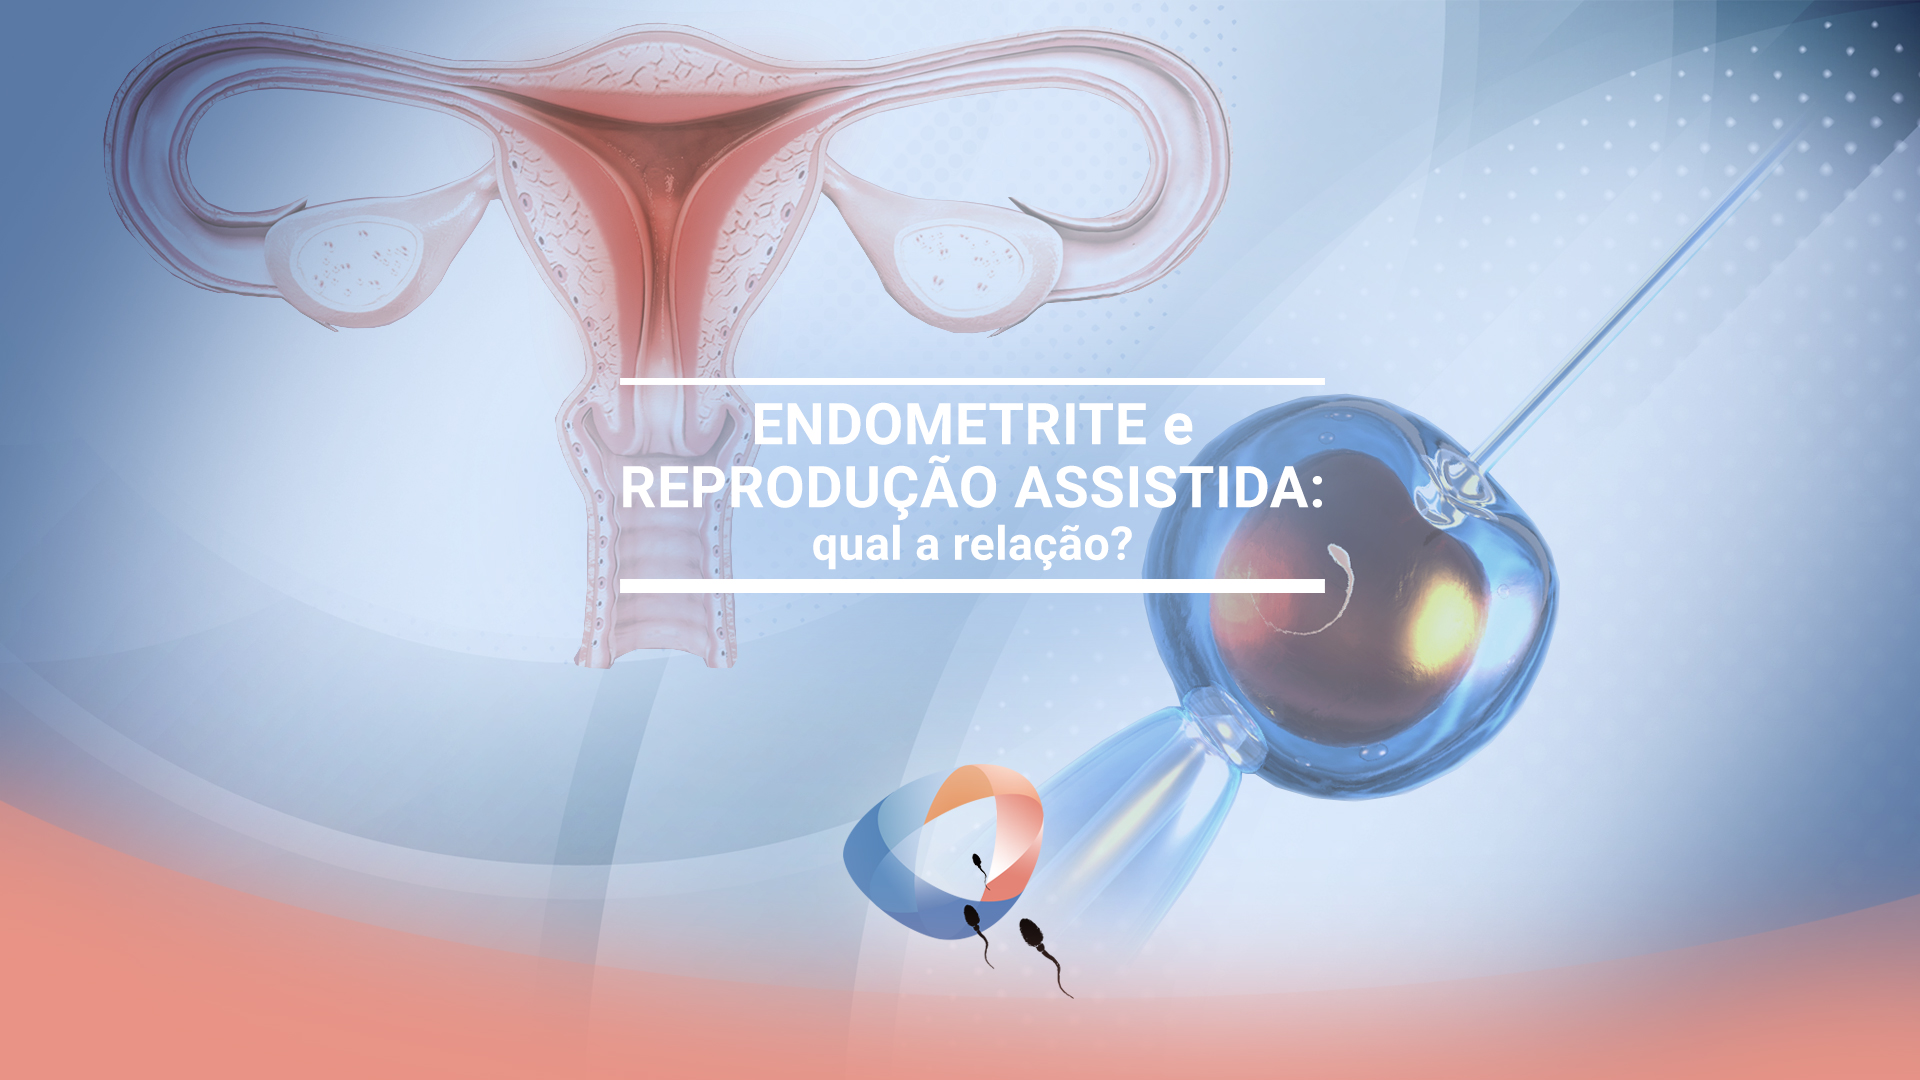 Endometrite e reprodução assistida: qual a relação?